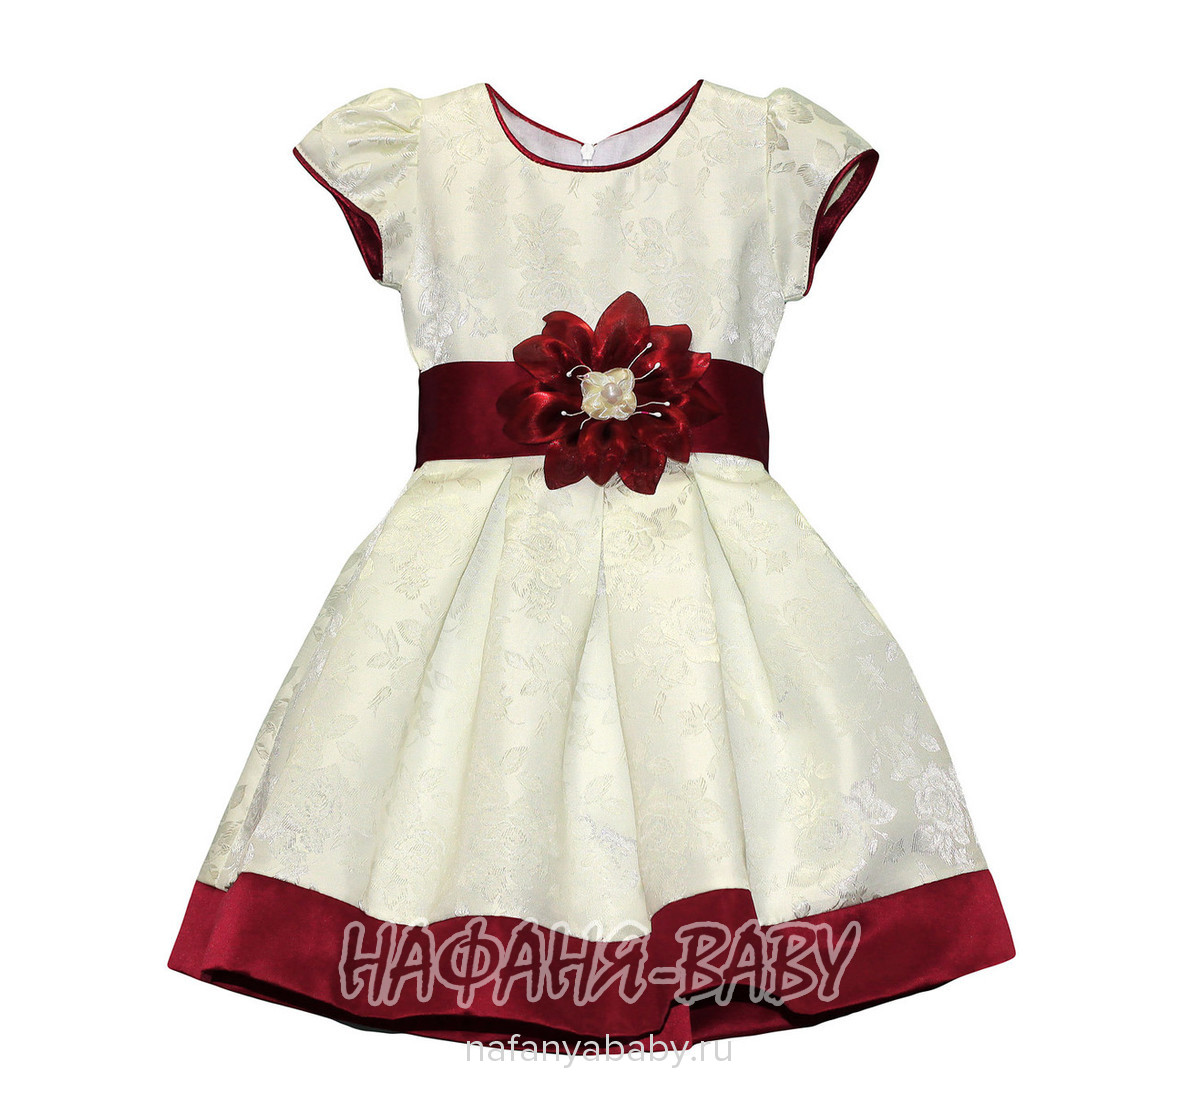 Детское платье VENERA, купить в интернет магазине Нафаня. арт: 14235.